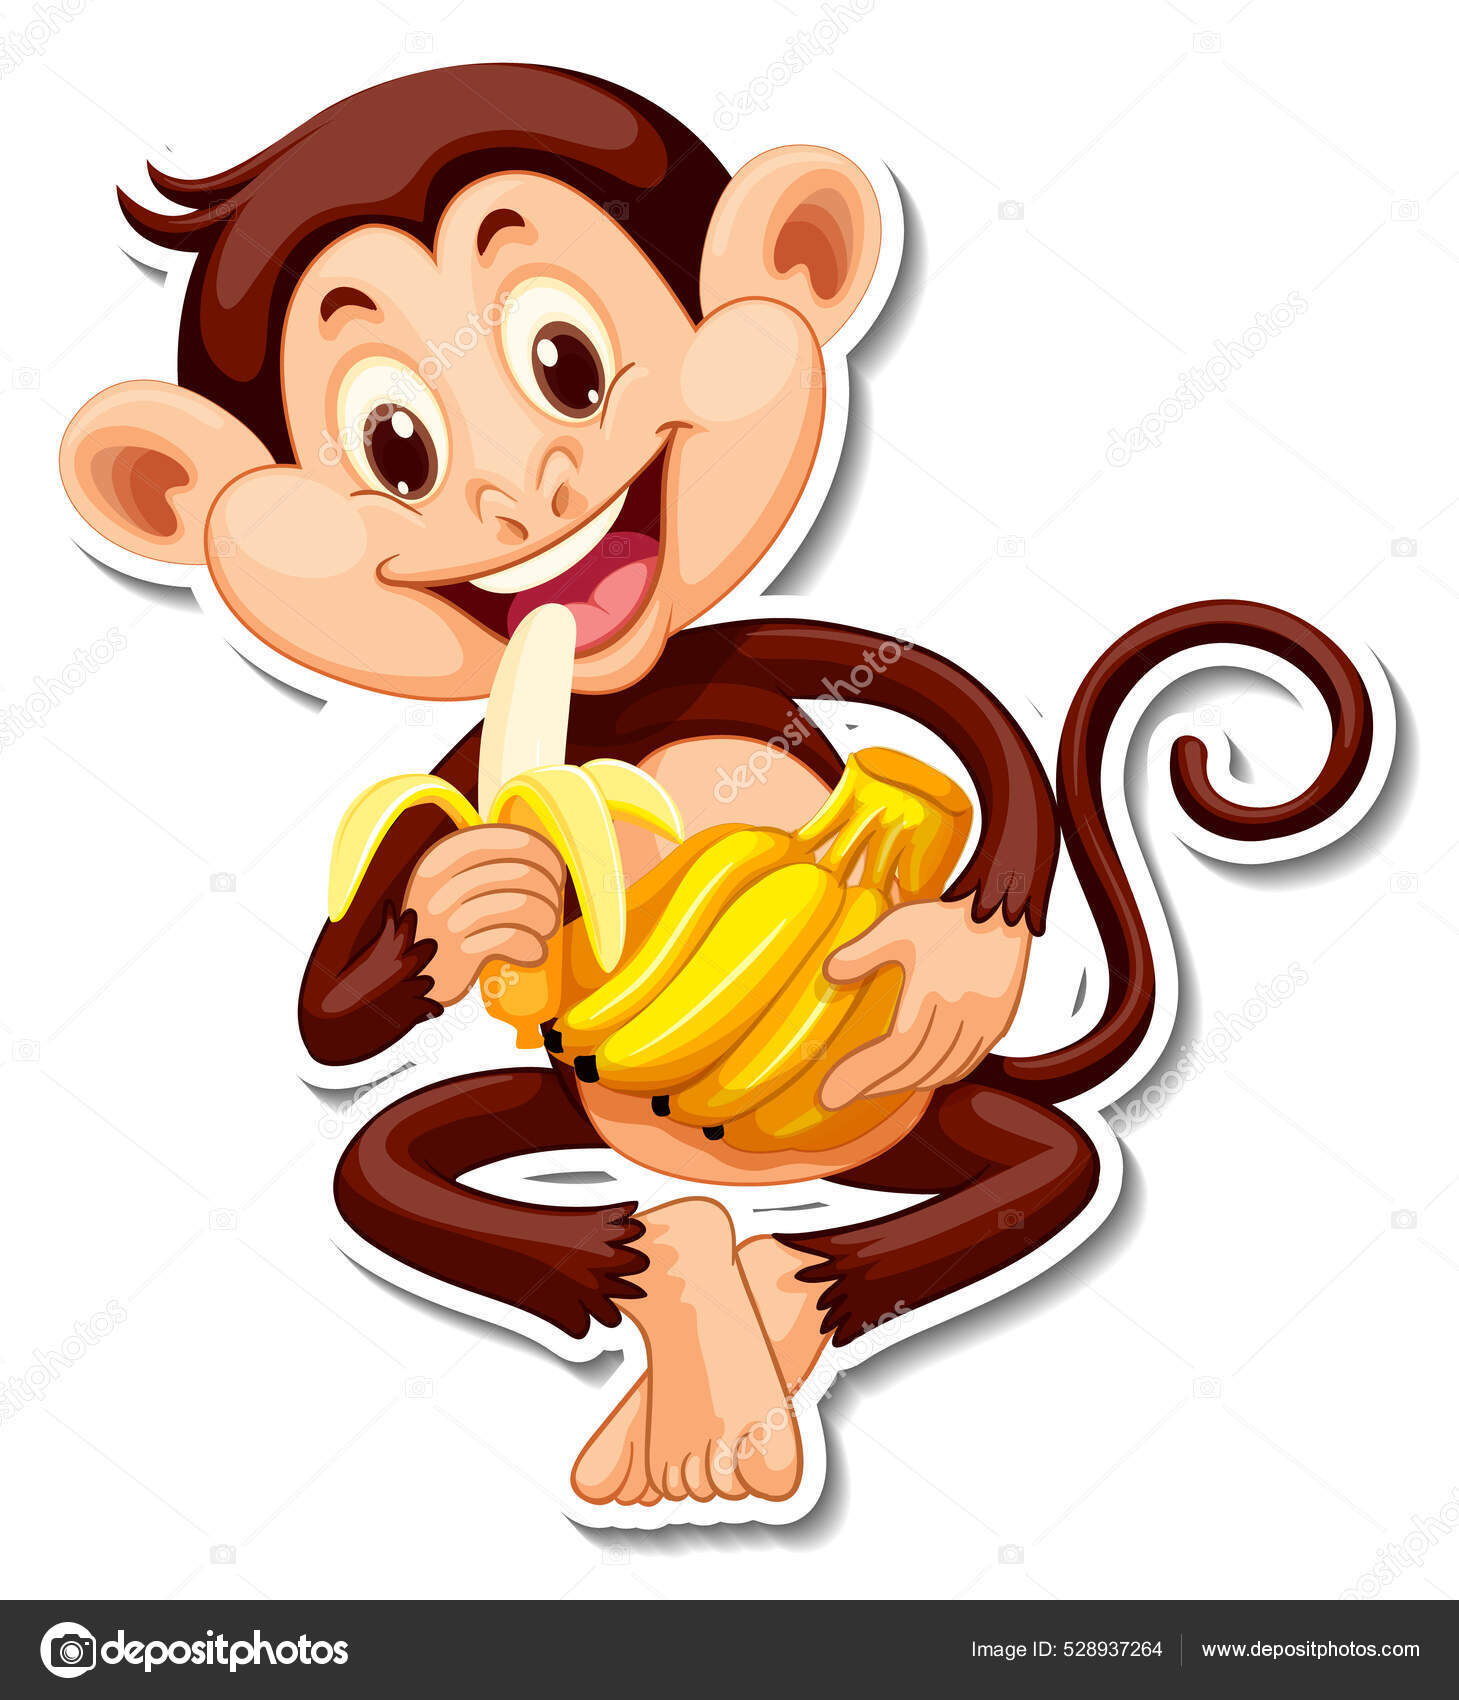 Macaco bonito dos desenhos animados comendo banana